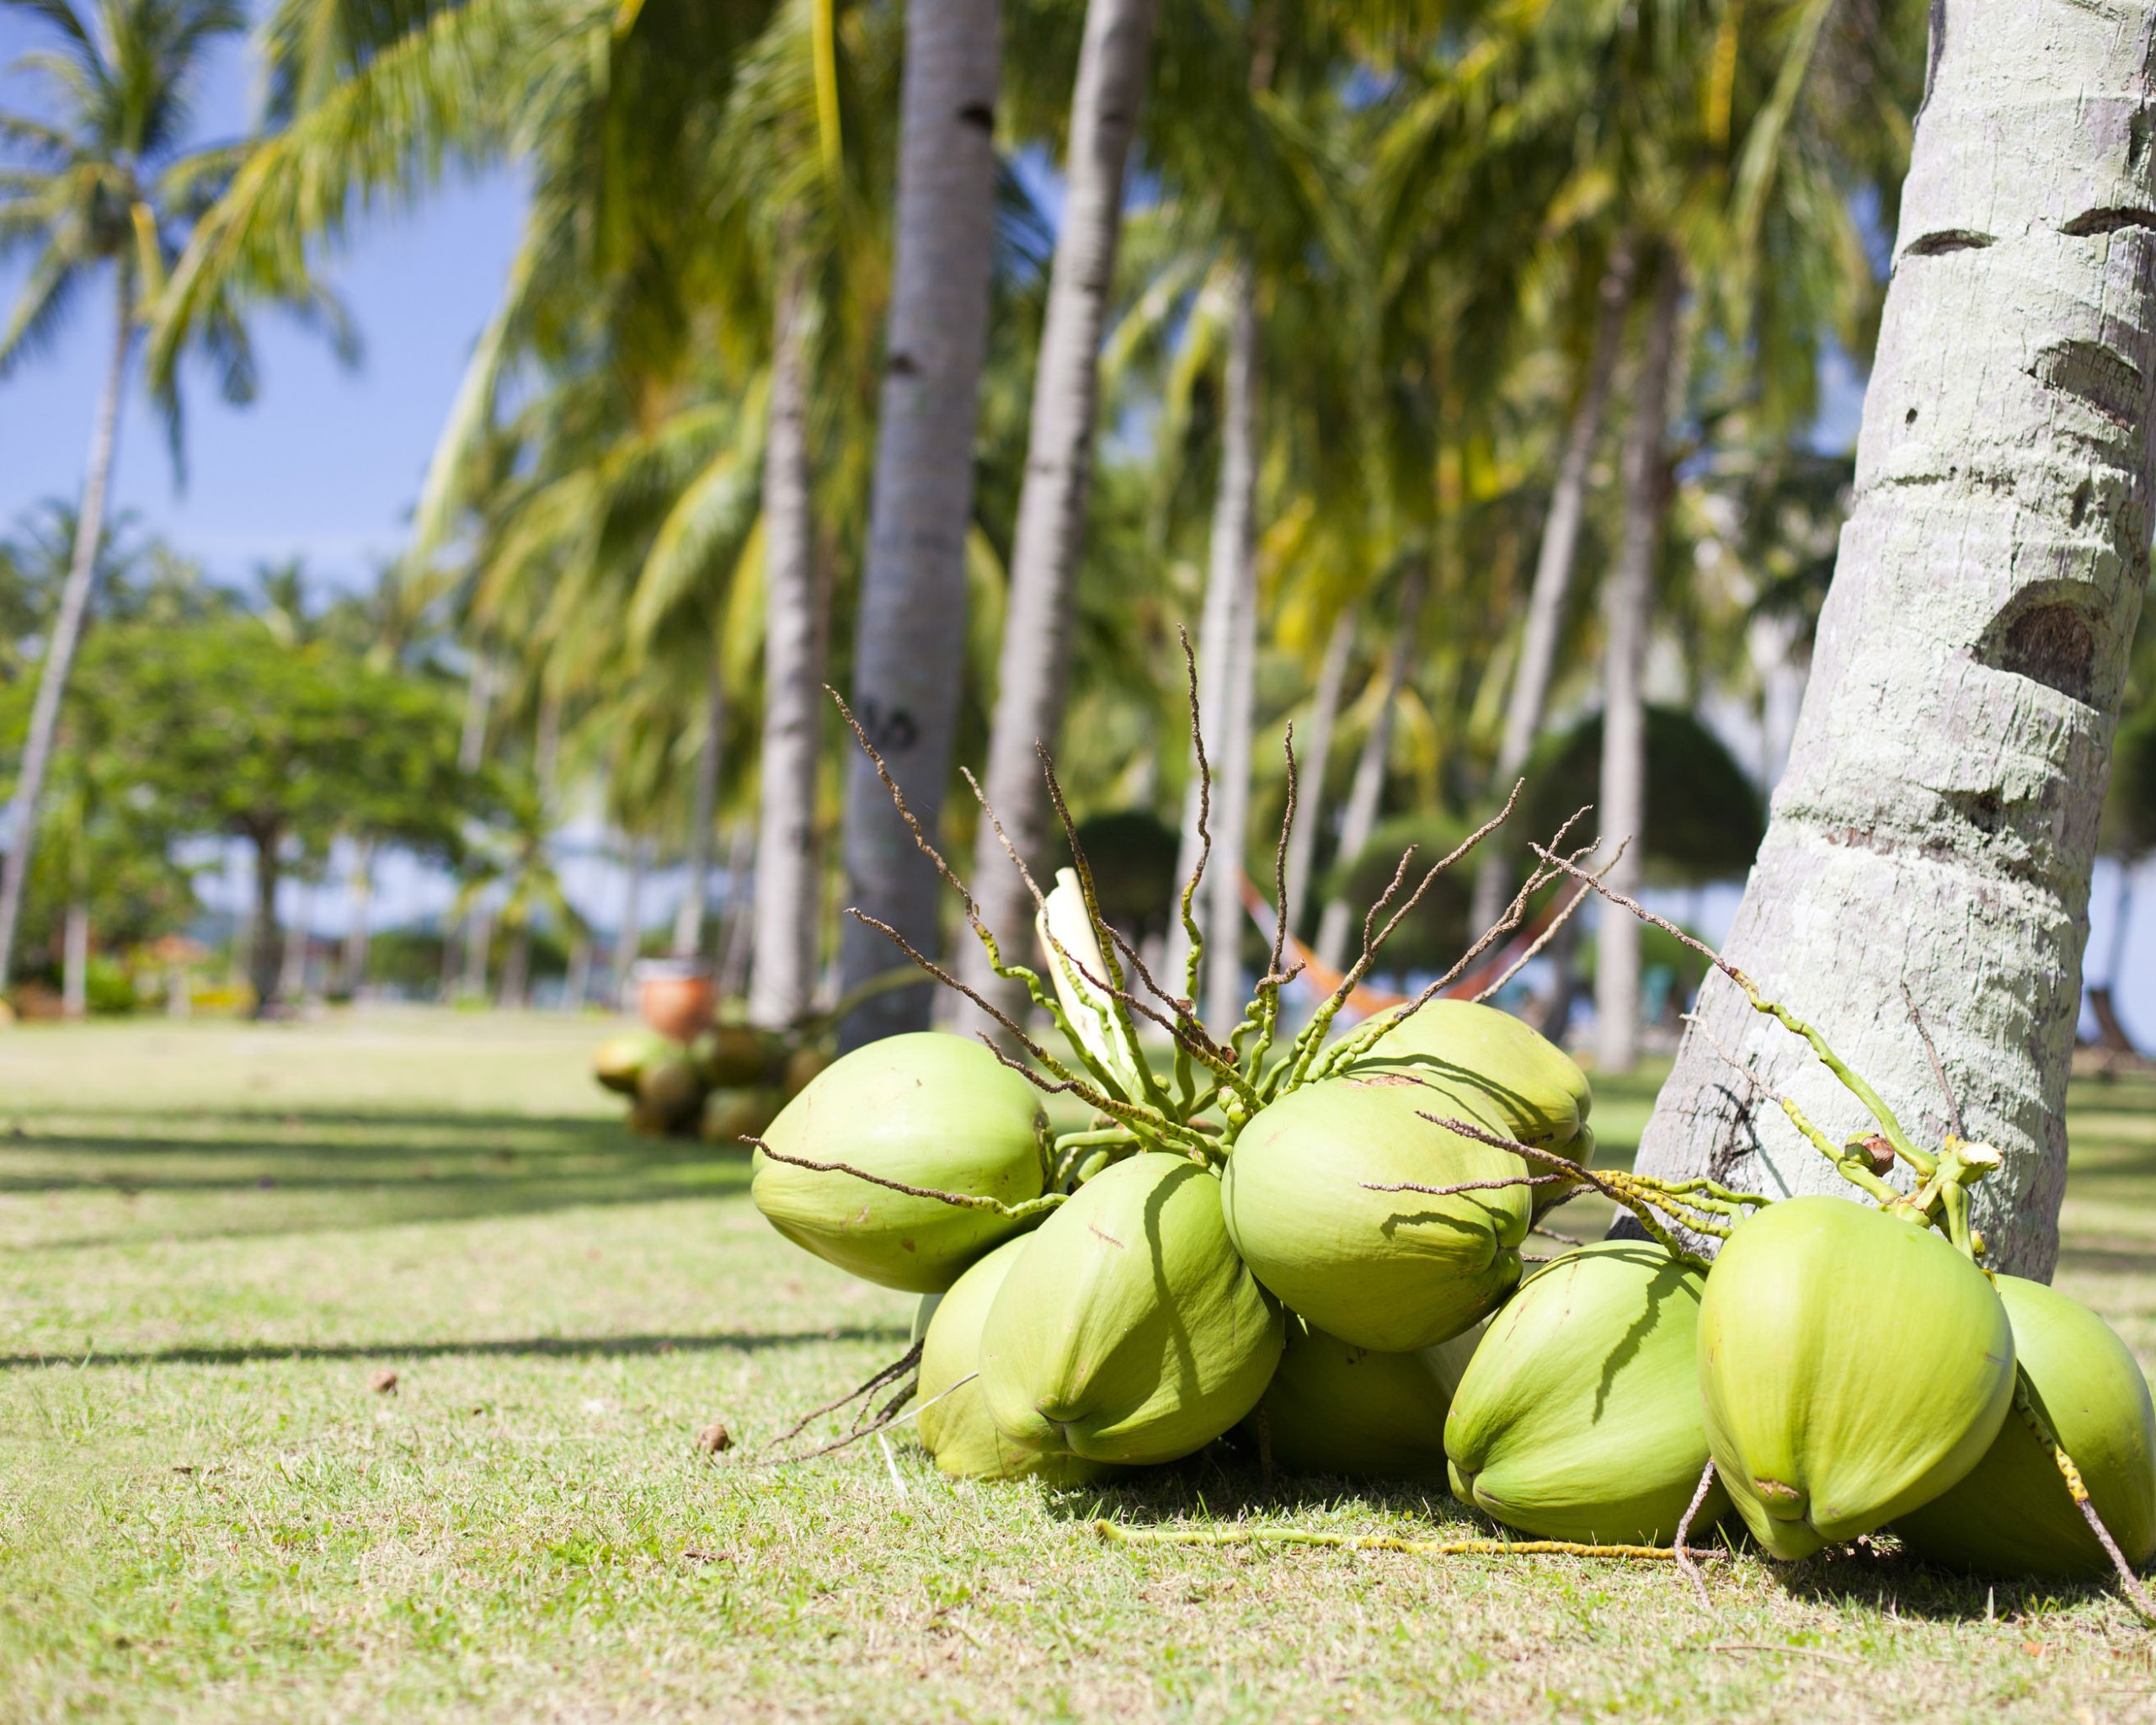 椰子树在菲律宾 库存图片. 图片 包括有 健康, 菲律宾, 生活方式, 人们, 朋友, 庭院, 位于, 木炭 - 112876097